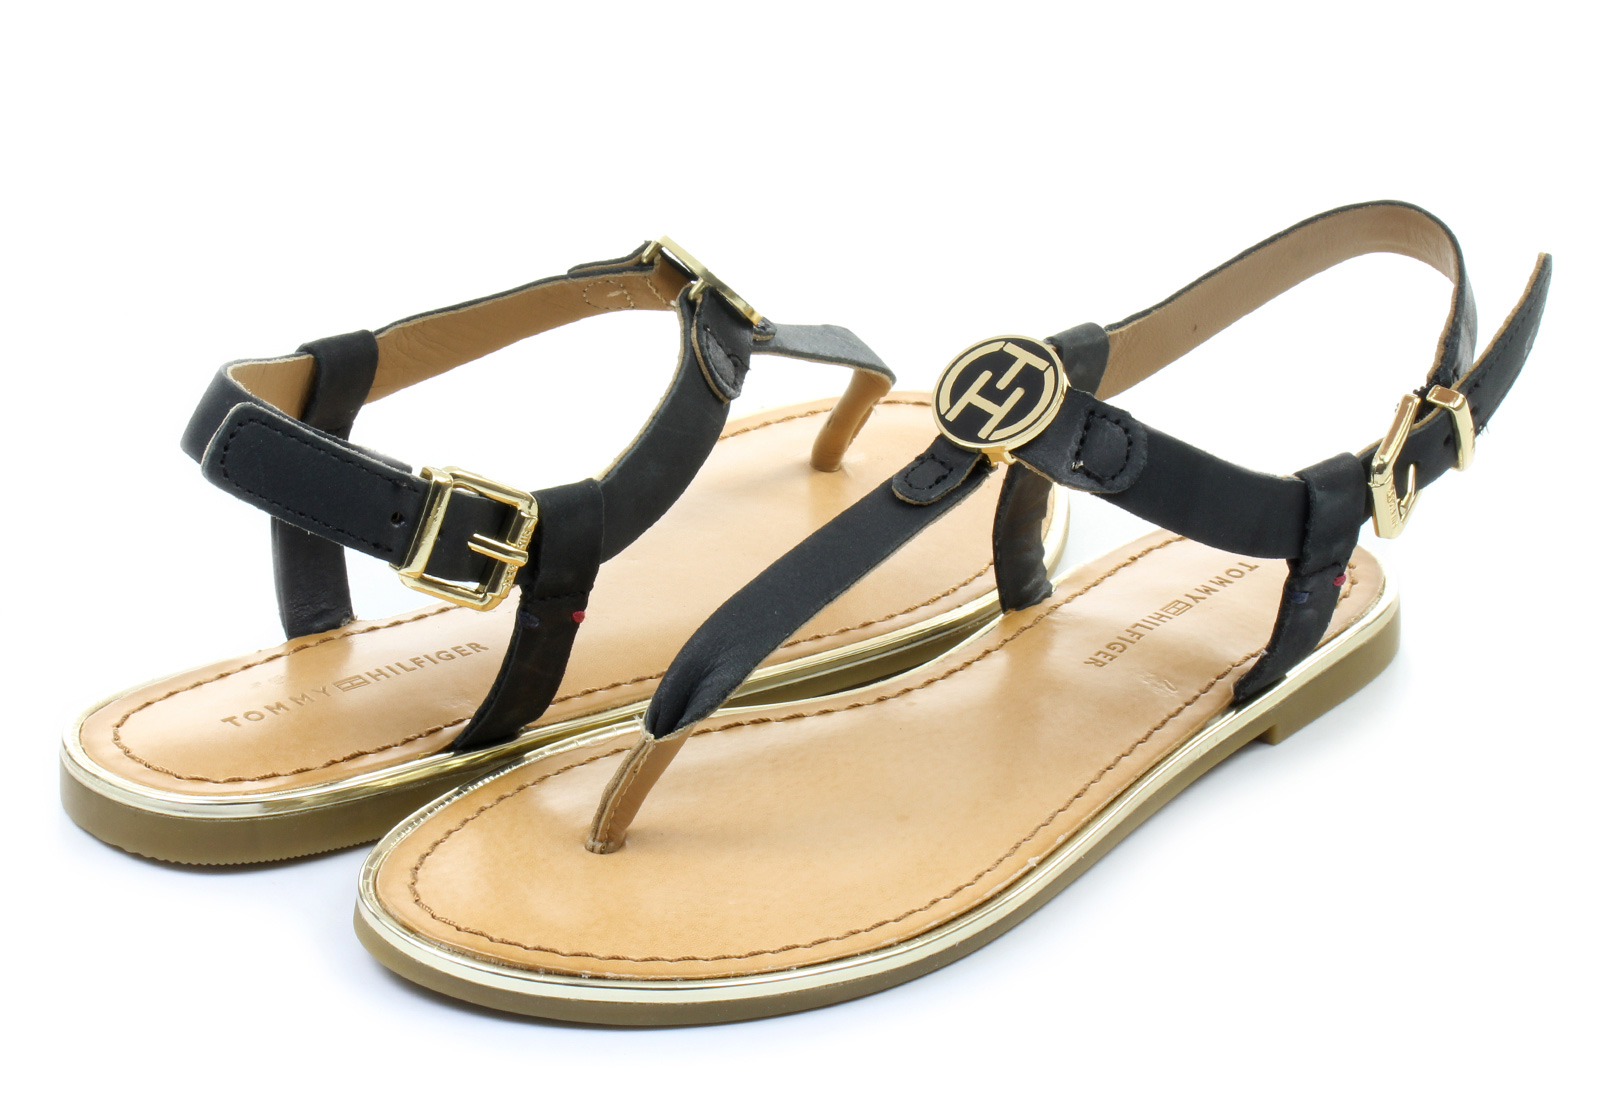 Tommy Hilfiger Sandals - Julia 26a - 15S-8685-990 - Online shop for ...